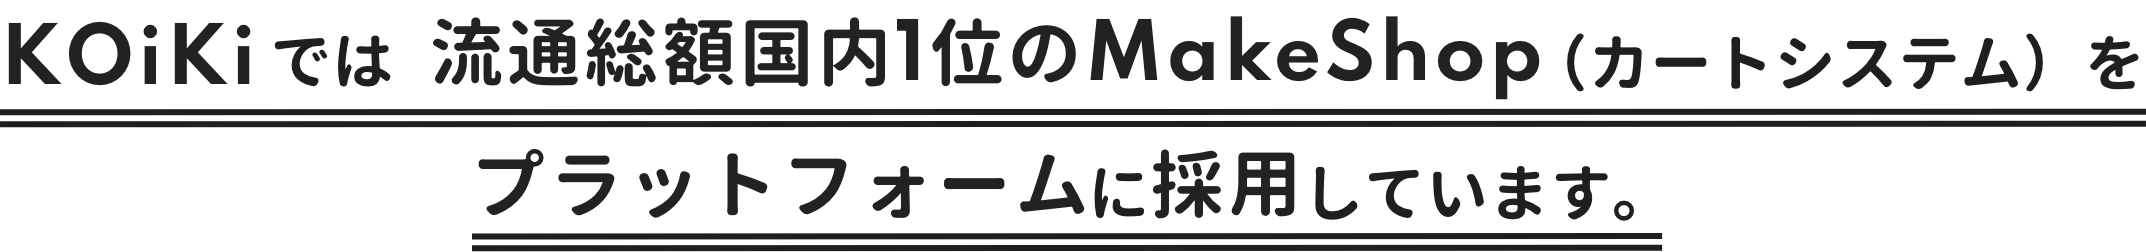 KOiKiでは,流通総額国内1位のMakeShop(カートシステム)をプラットフォームに採用しています。